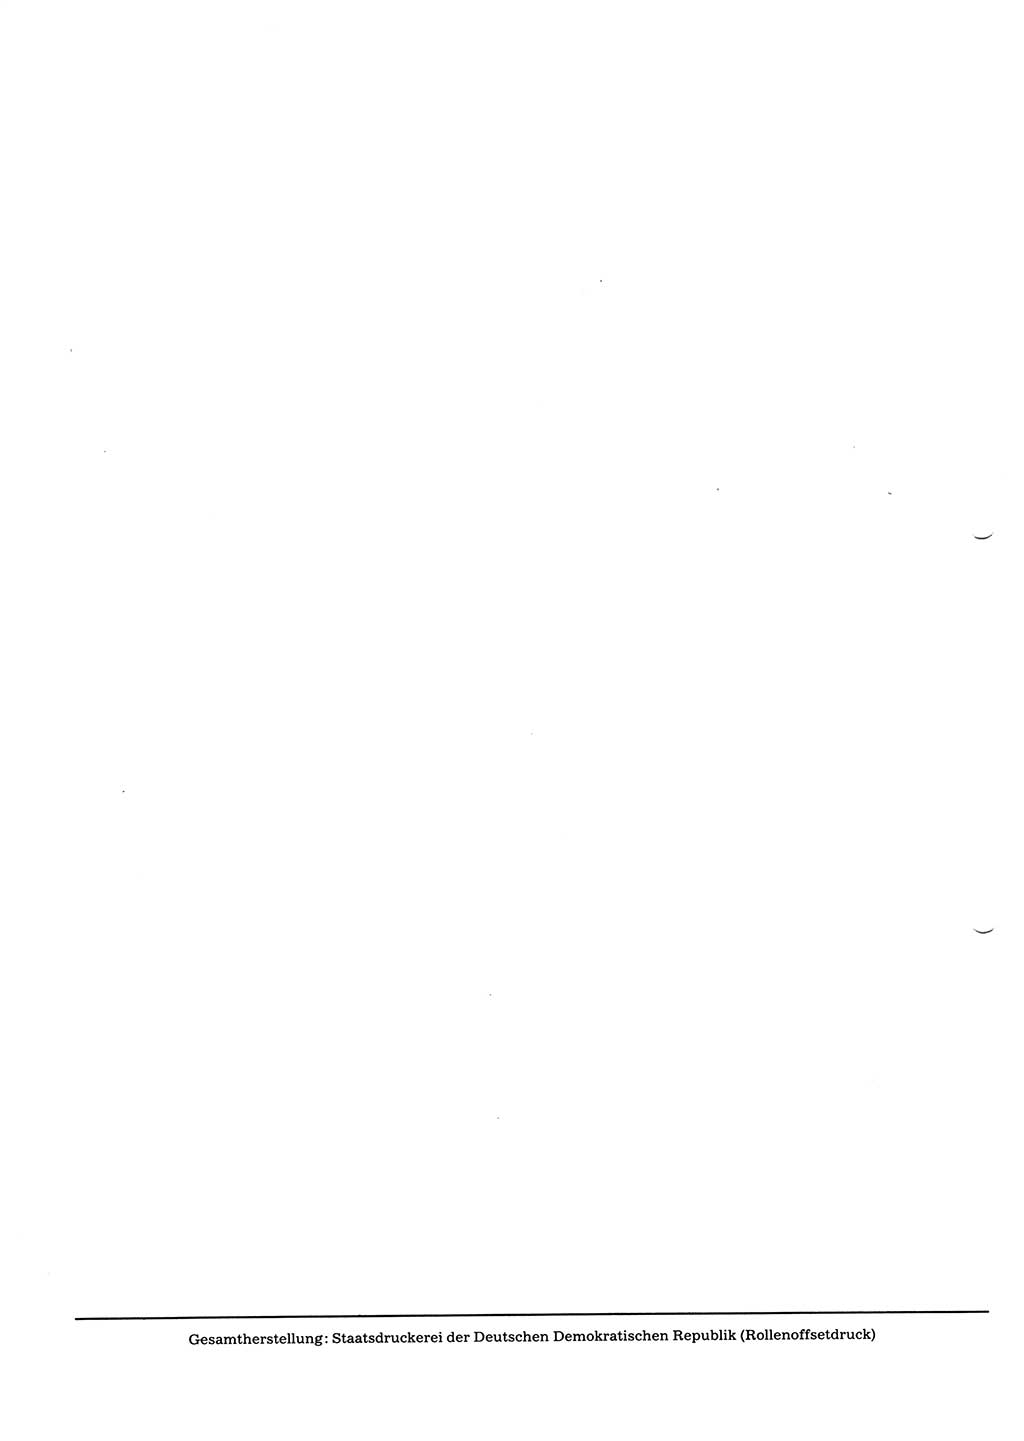 Tagungen der Volkskammer (VK) der Deutschen Demokratischen Republik (DDR), 10. Wahlperiode 1990, Seite 208 (VK. DDR 10. WP. 1990, Prot. Tg. 1-38, 5.4.-2.10.1990, S. 208)